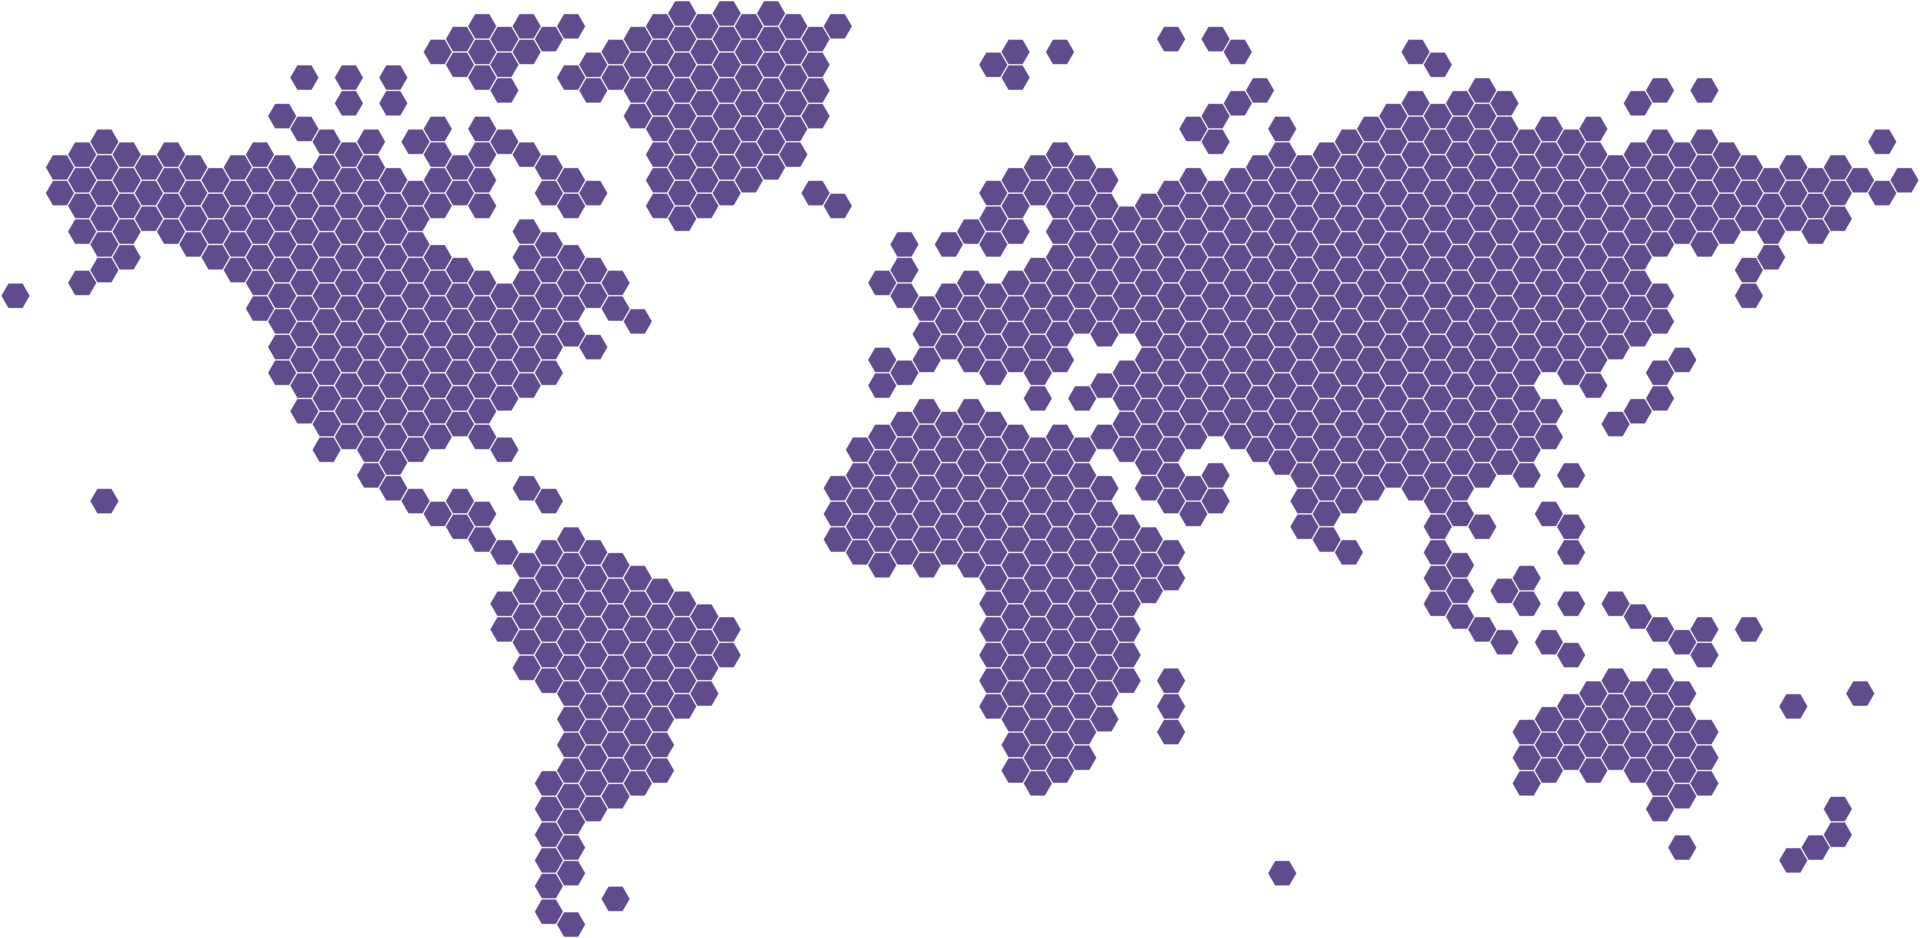 hexagon shape world map png